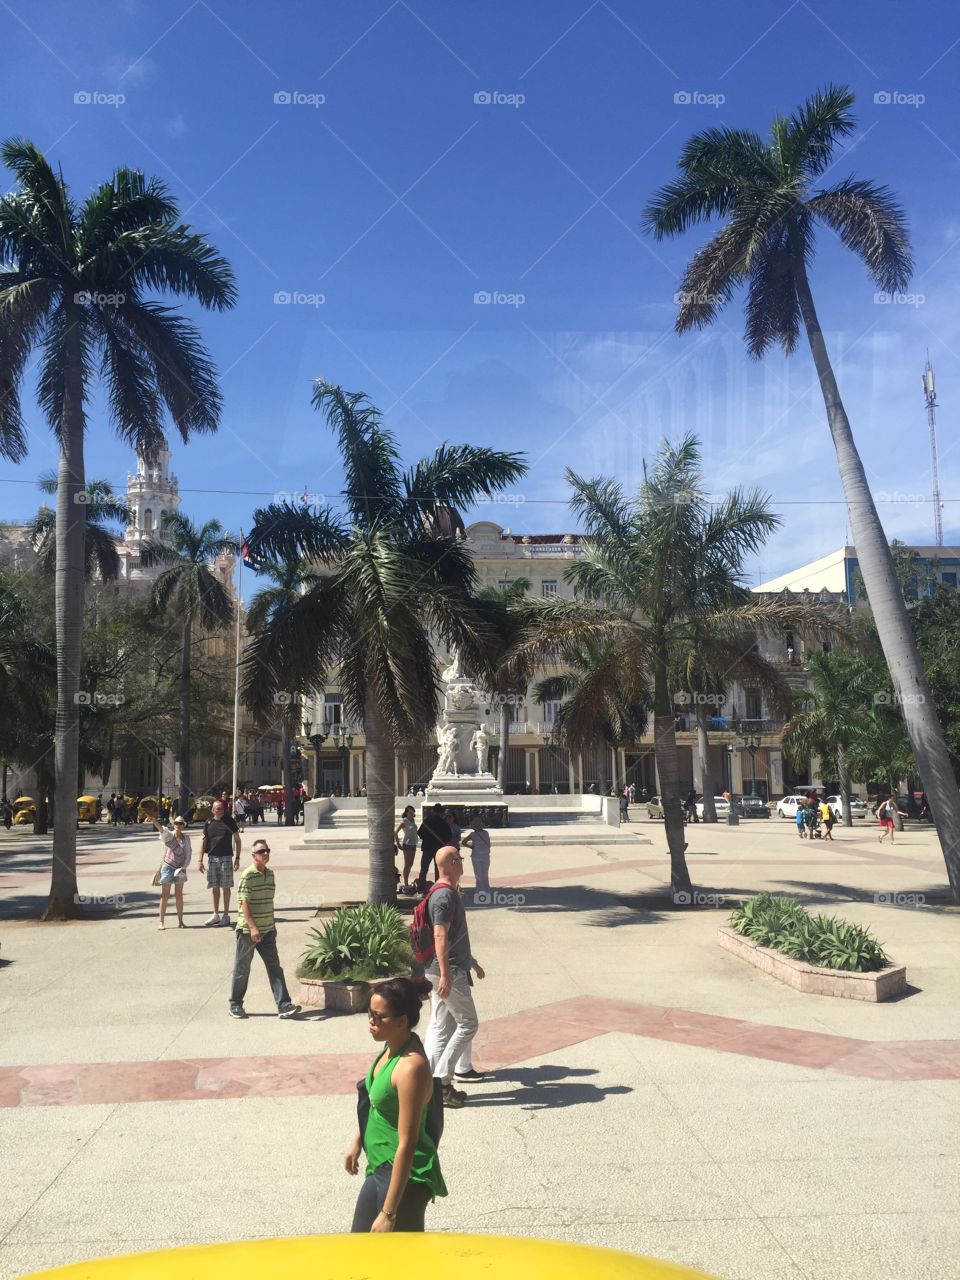 Palm trees in Havana, Cuba.